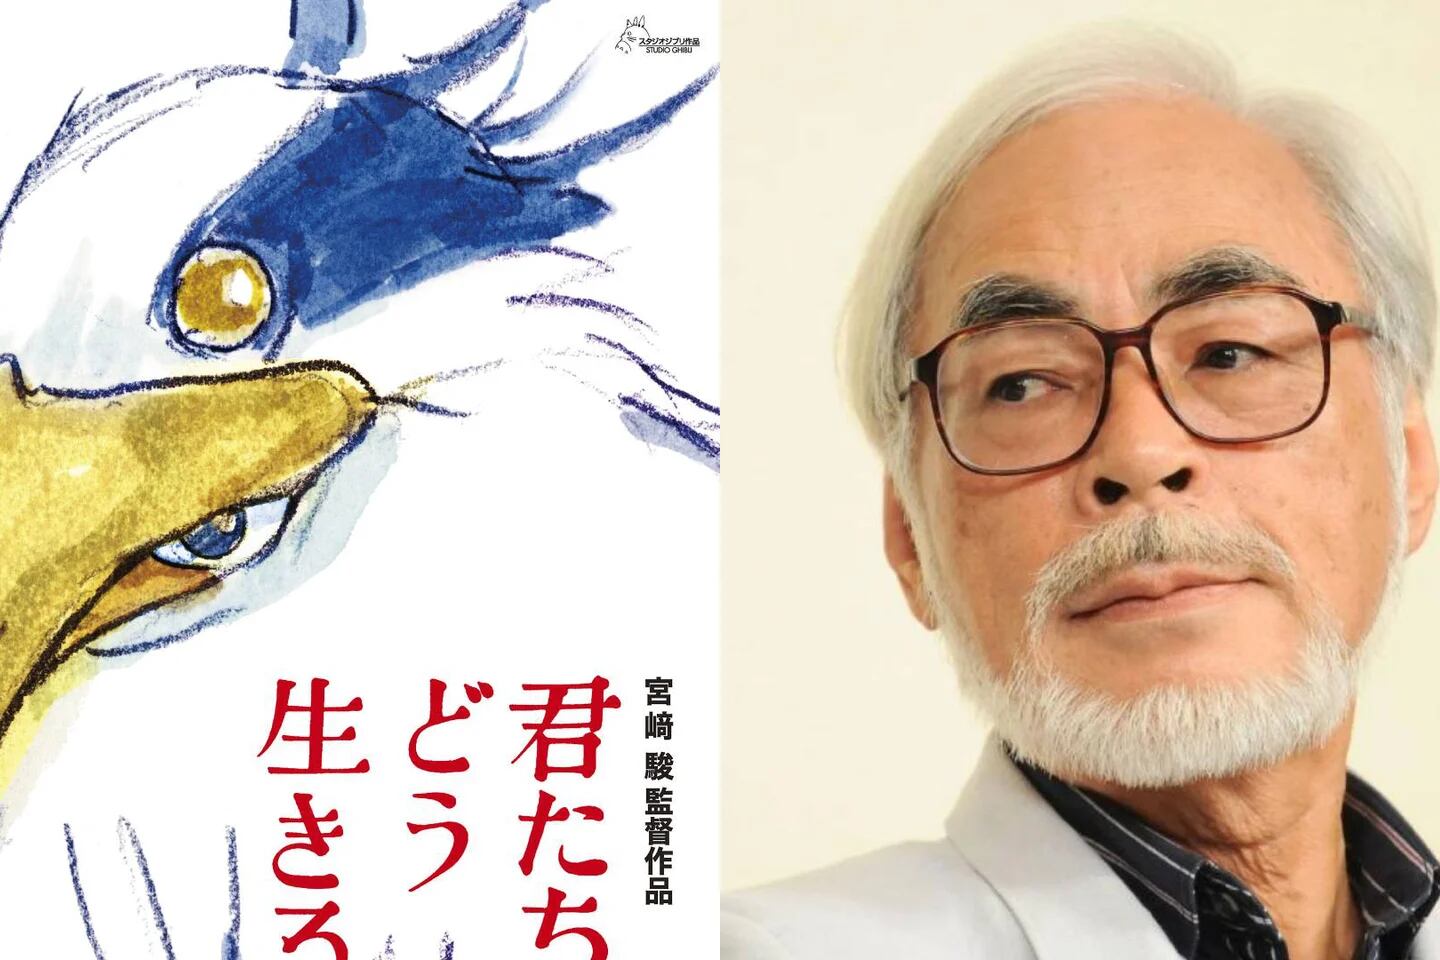 El mítico Hayao Miyazaki de Studio Ghibli estrena película sin tráiler ni  imágenes